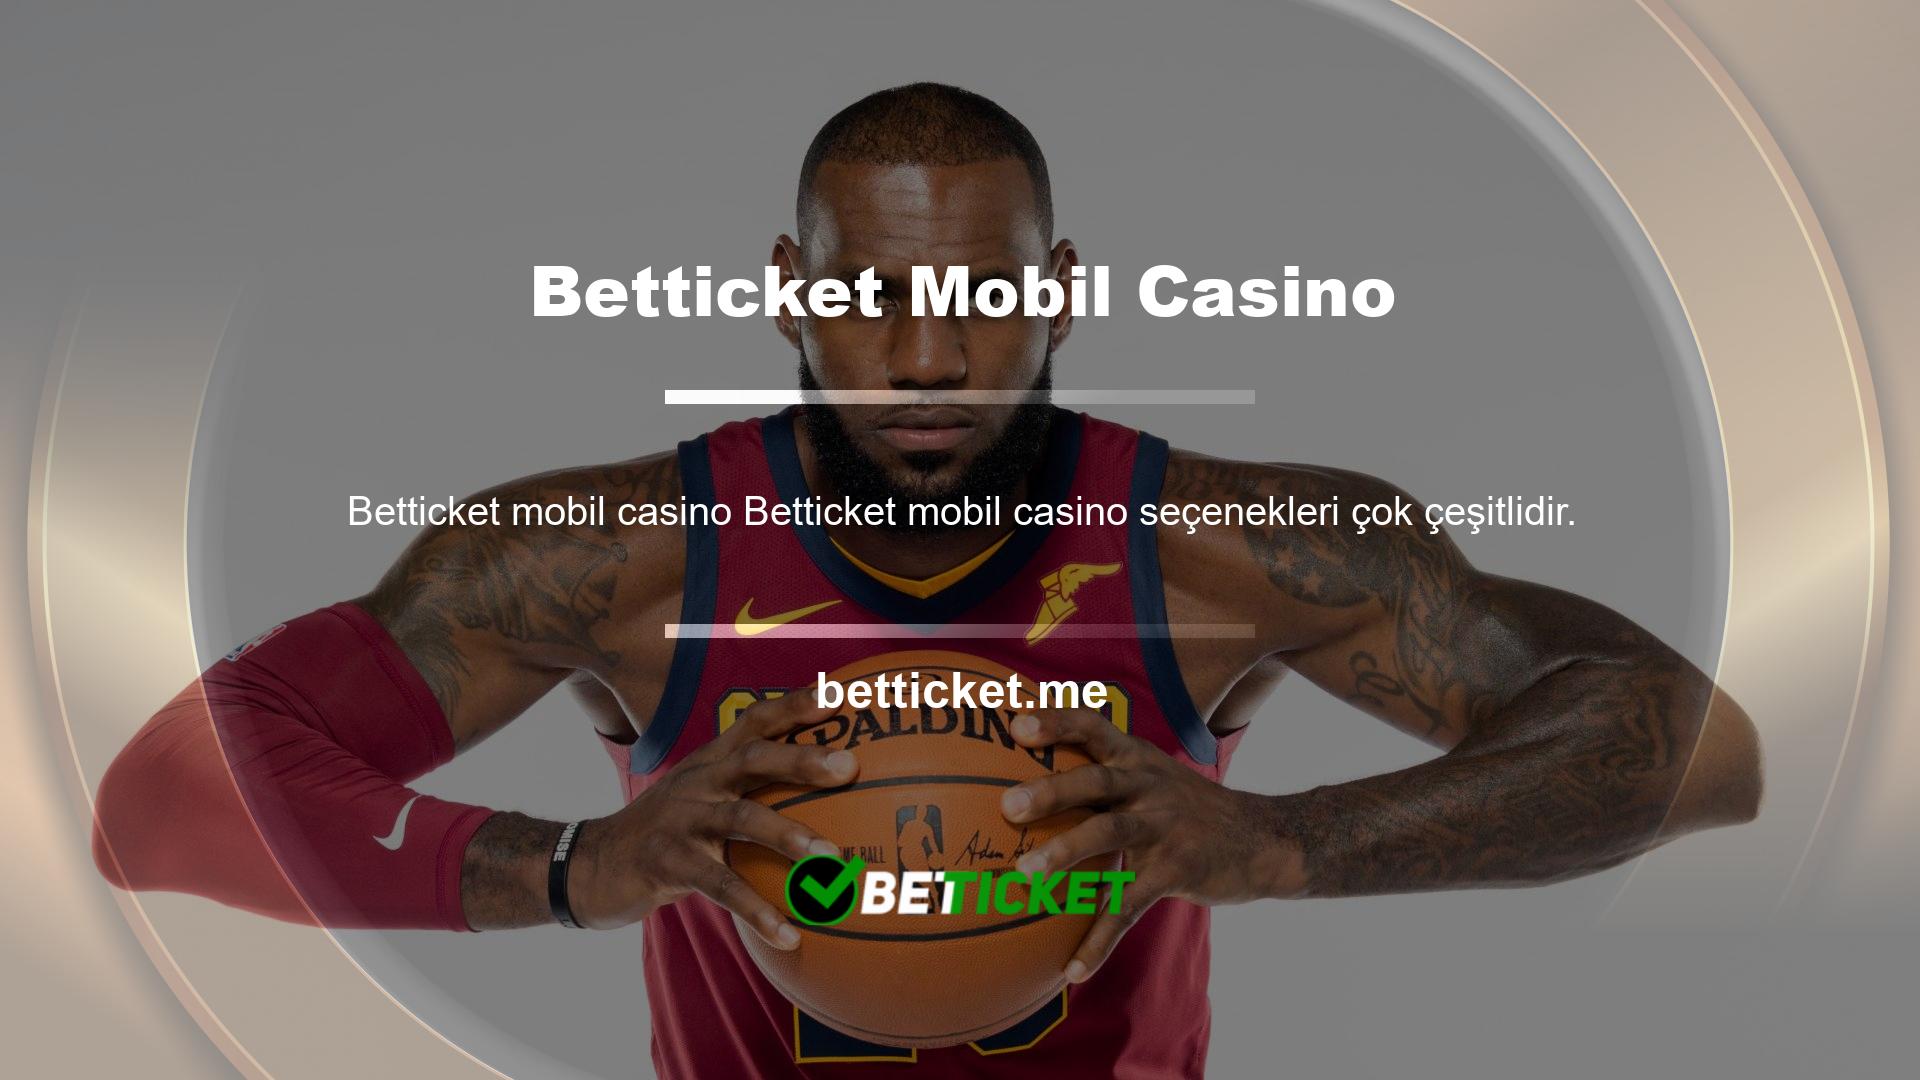 Betticket Mobil Casino üyelerine önemli promosyonlar ve yeni oyunlar ana sayfanın görsel bölümünde duyurulmaktadır